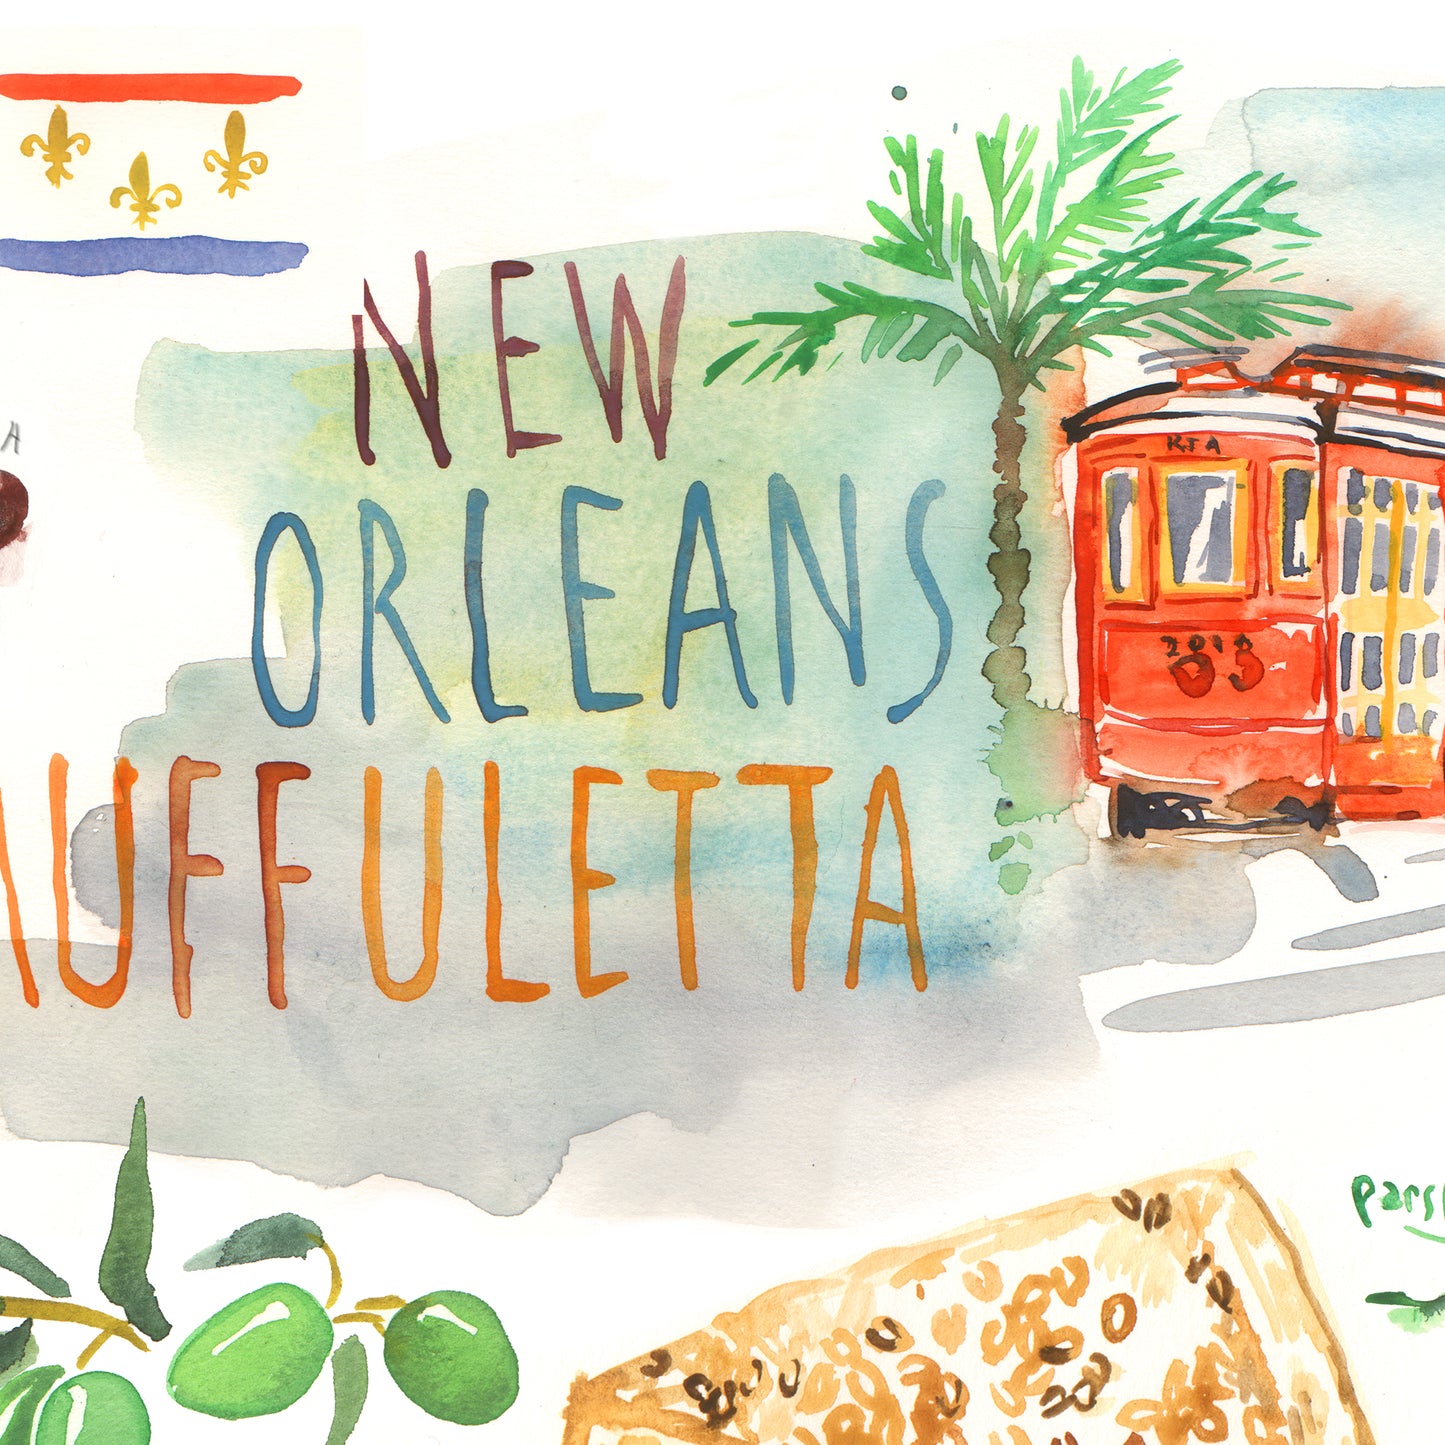 New Orleans Muffuletta recipe